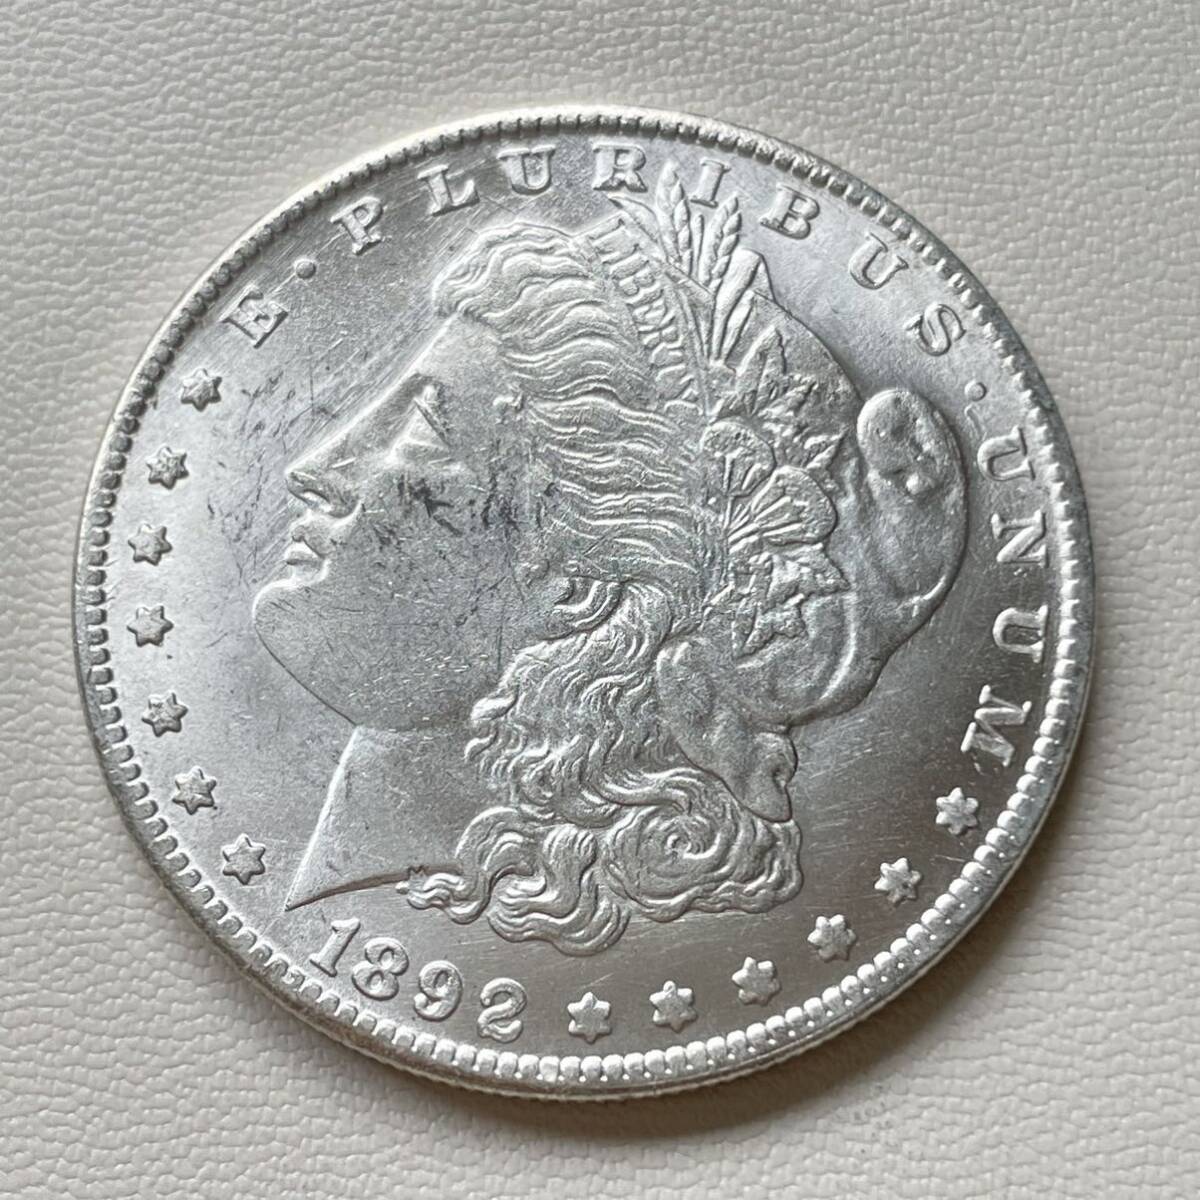 アメリカ 硬貨 古銭 自由の女神 1892年 リバティ イーグル モルガン 13の星 コイン 重20.51g_画像1